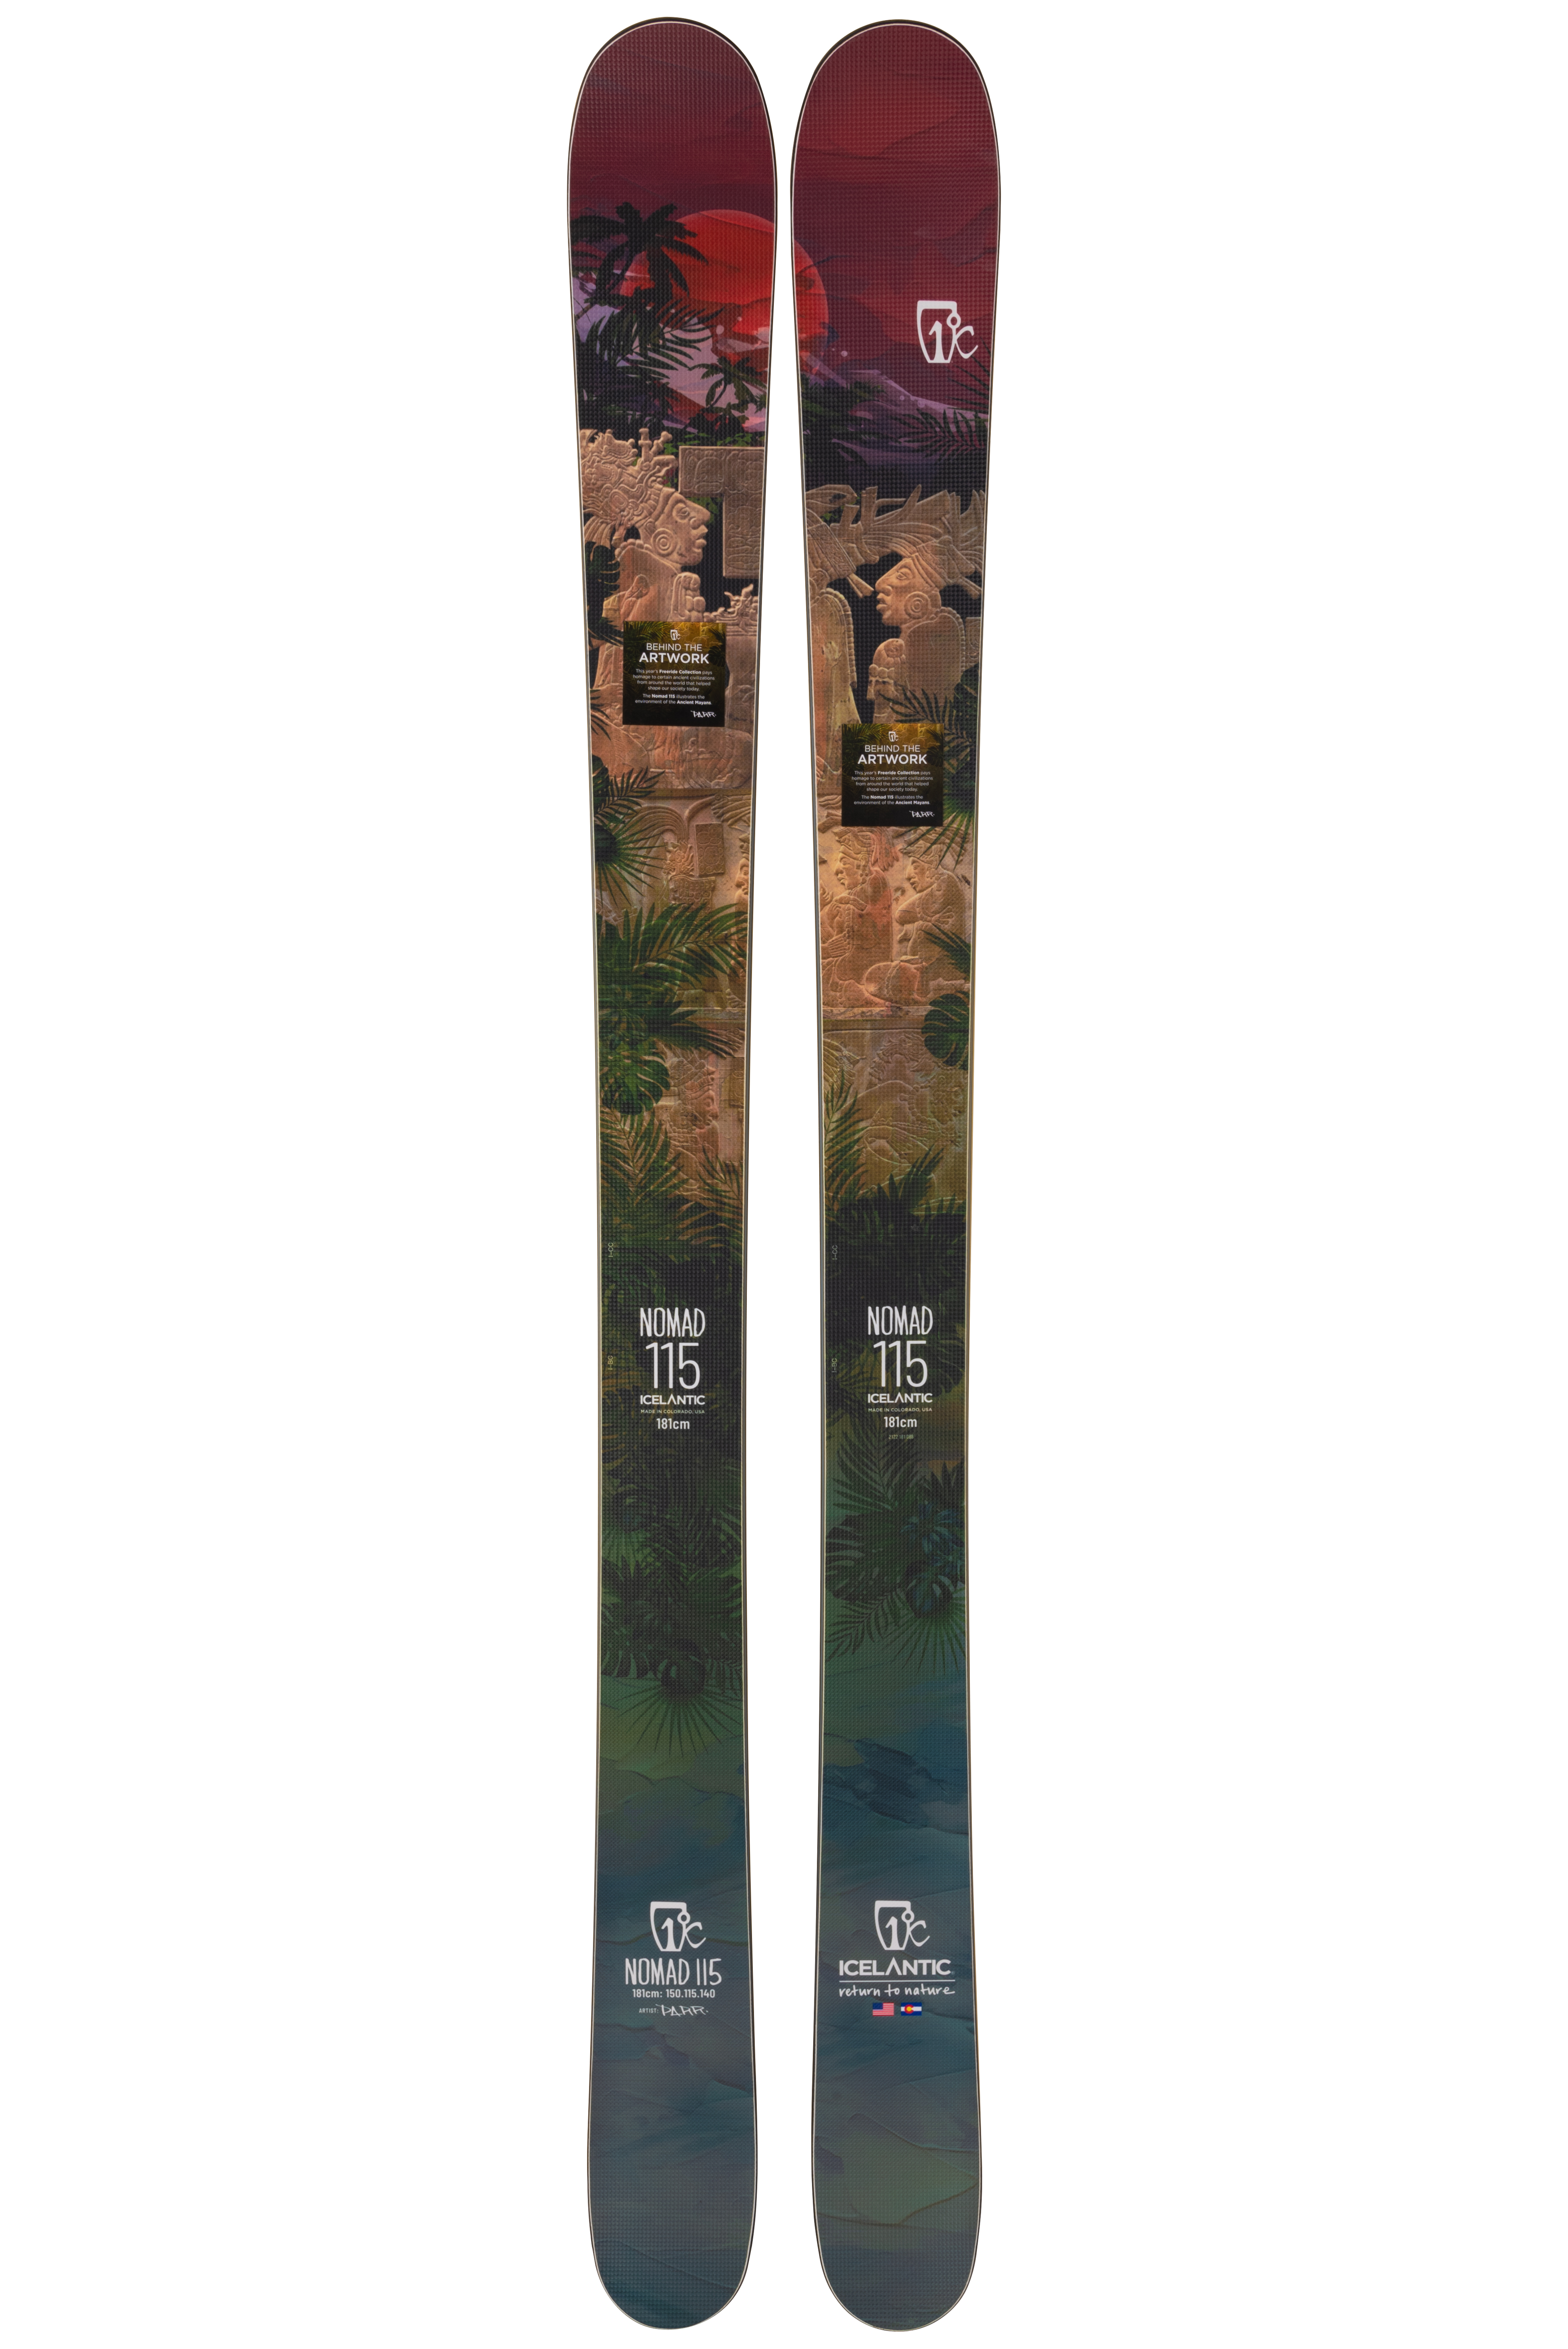 Купить лыжи средней жесткости Icelantic Nomad 115 2021/2022 181cm в Киеве